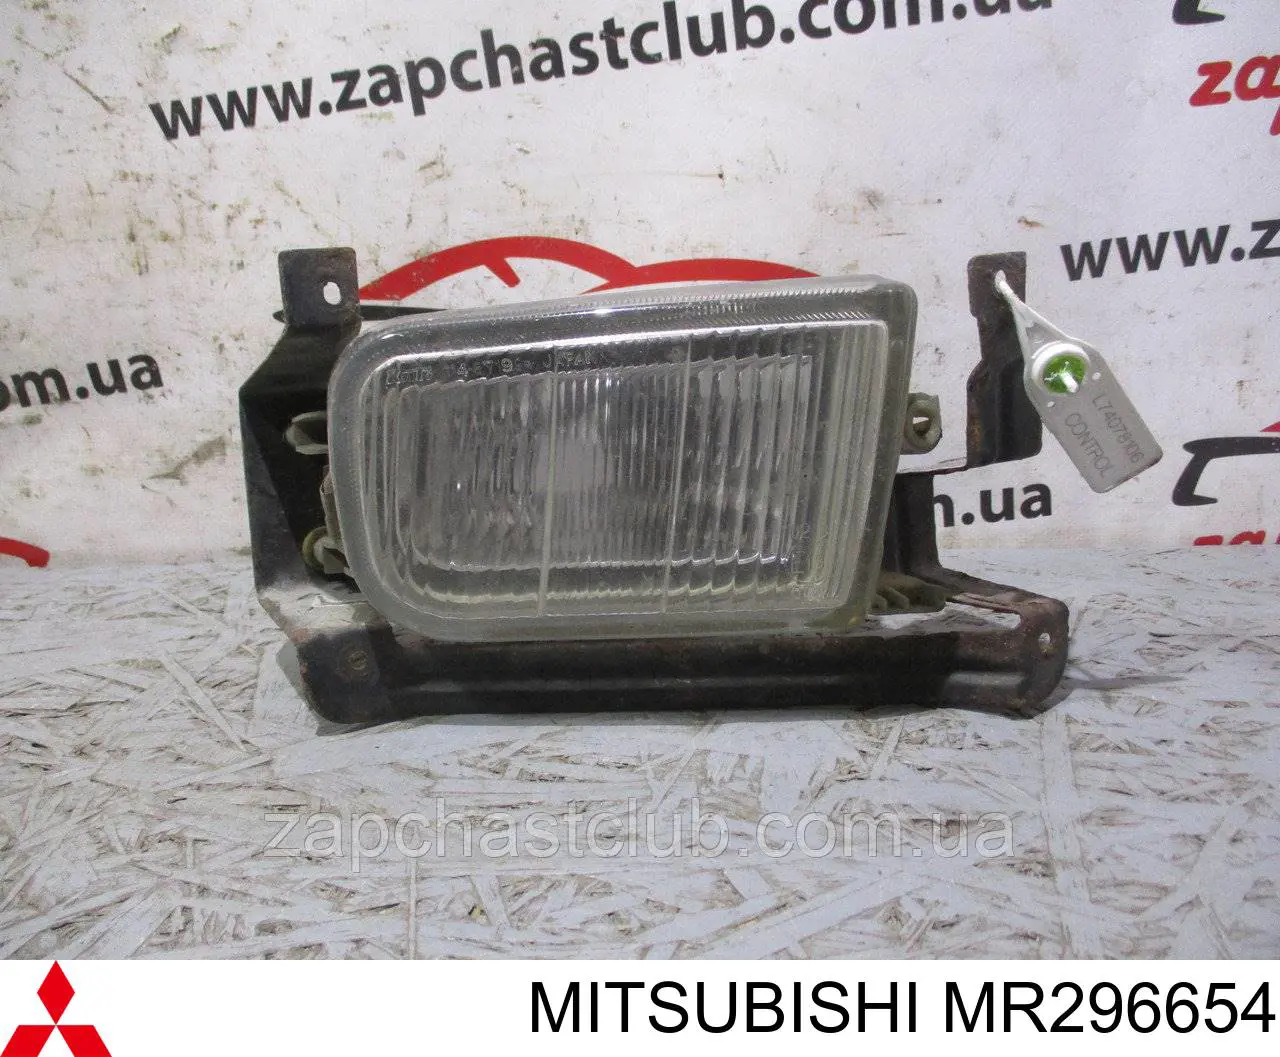 MR296654 Mitsubishi фара противотуманная правая